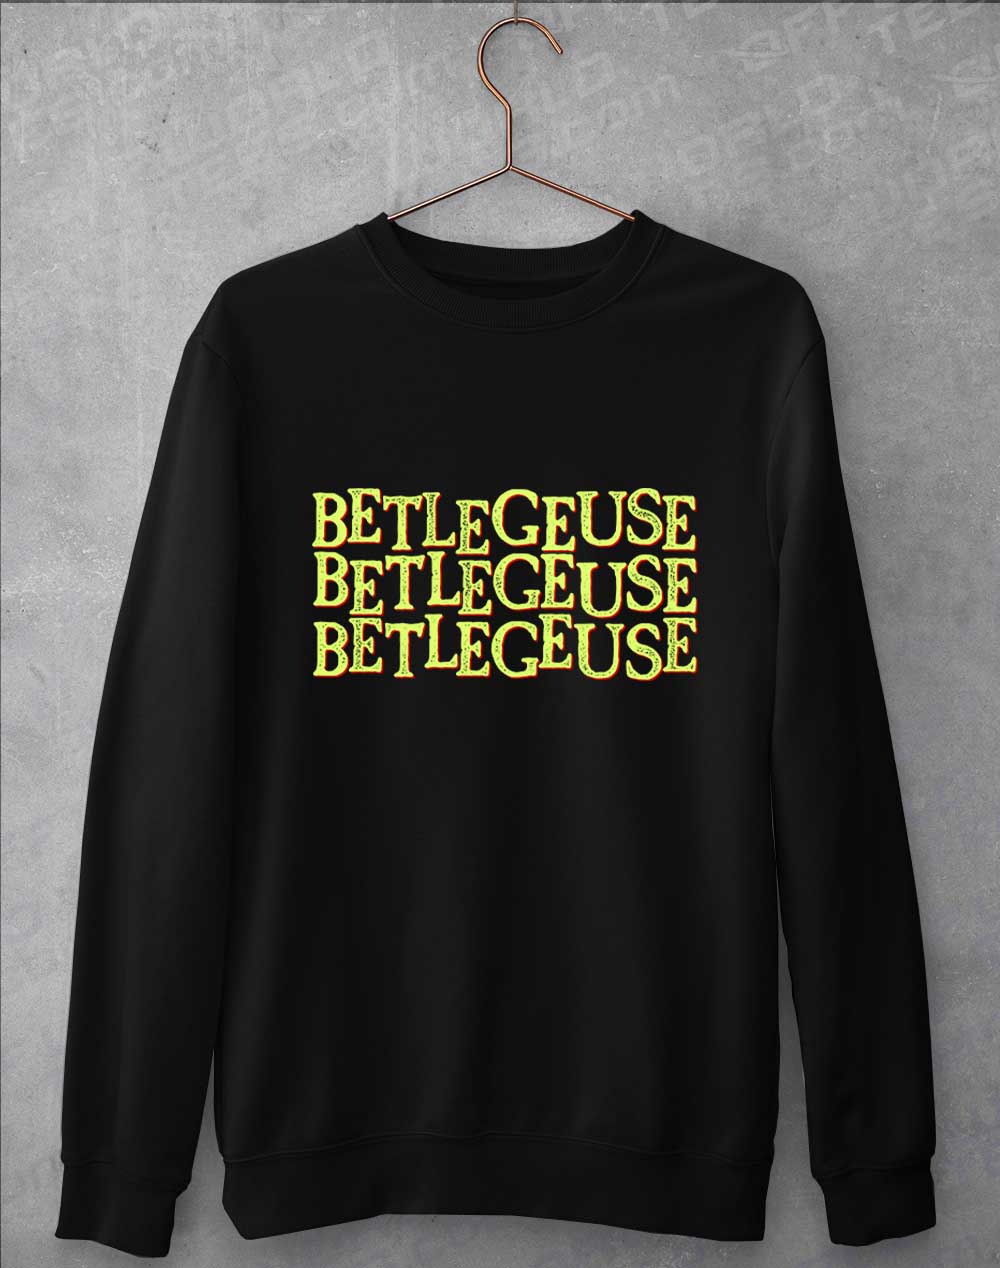 Jet Black - Betelgeuse Betelgeuse Betelgeuse Sweatshirt